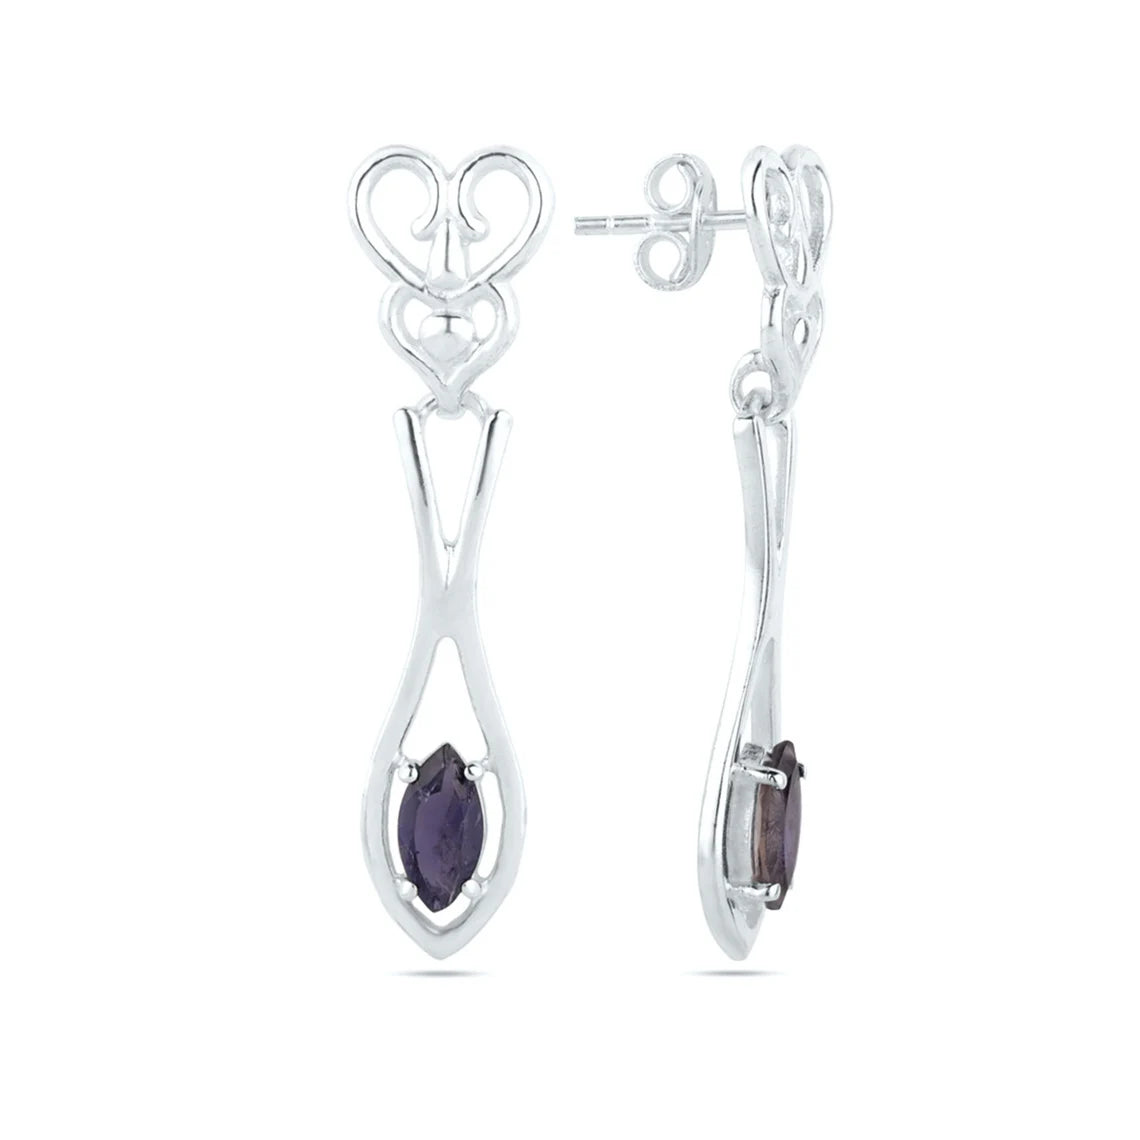 Iolite Gemstone Earrings - Iolite Dangle Earrings - 925 Sterling Silver Iolite Earrings - Iolite Jewelry